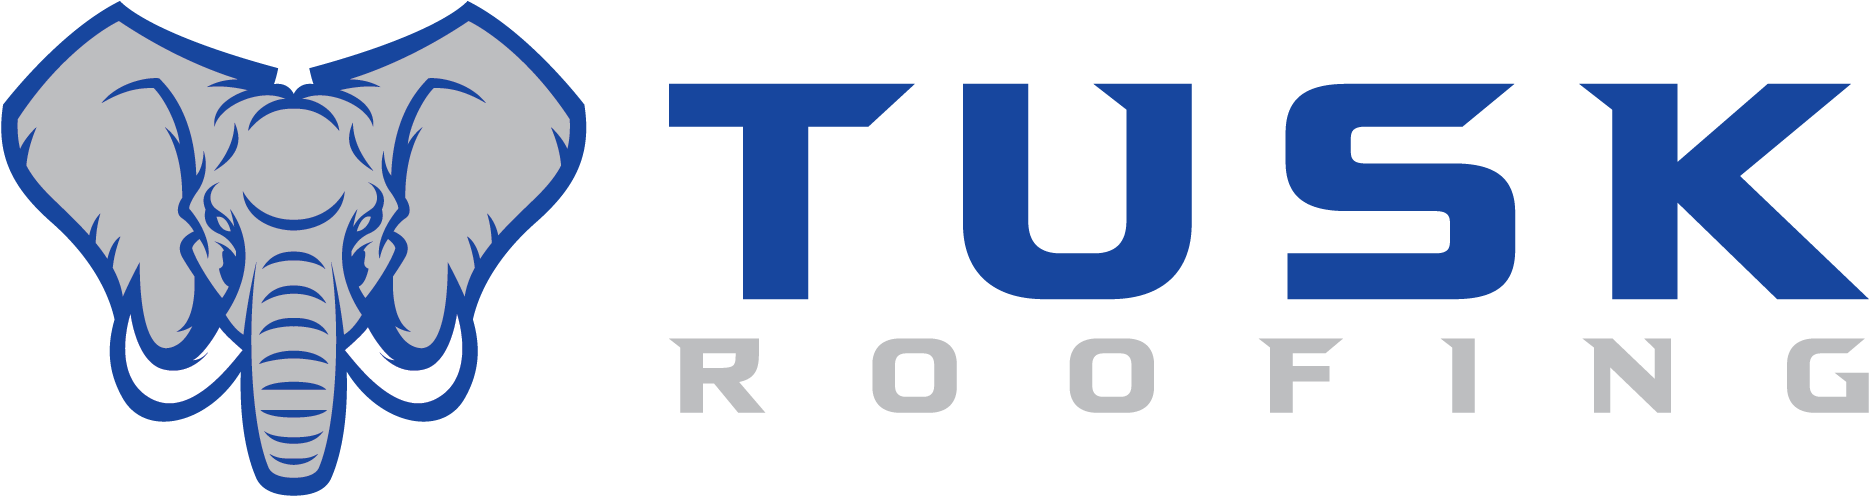 Tusk Roofing Miami, Fl - Kempen & Co Logo (1950x555)